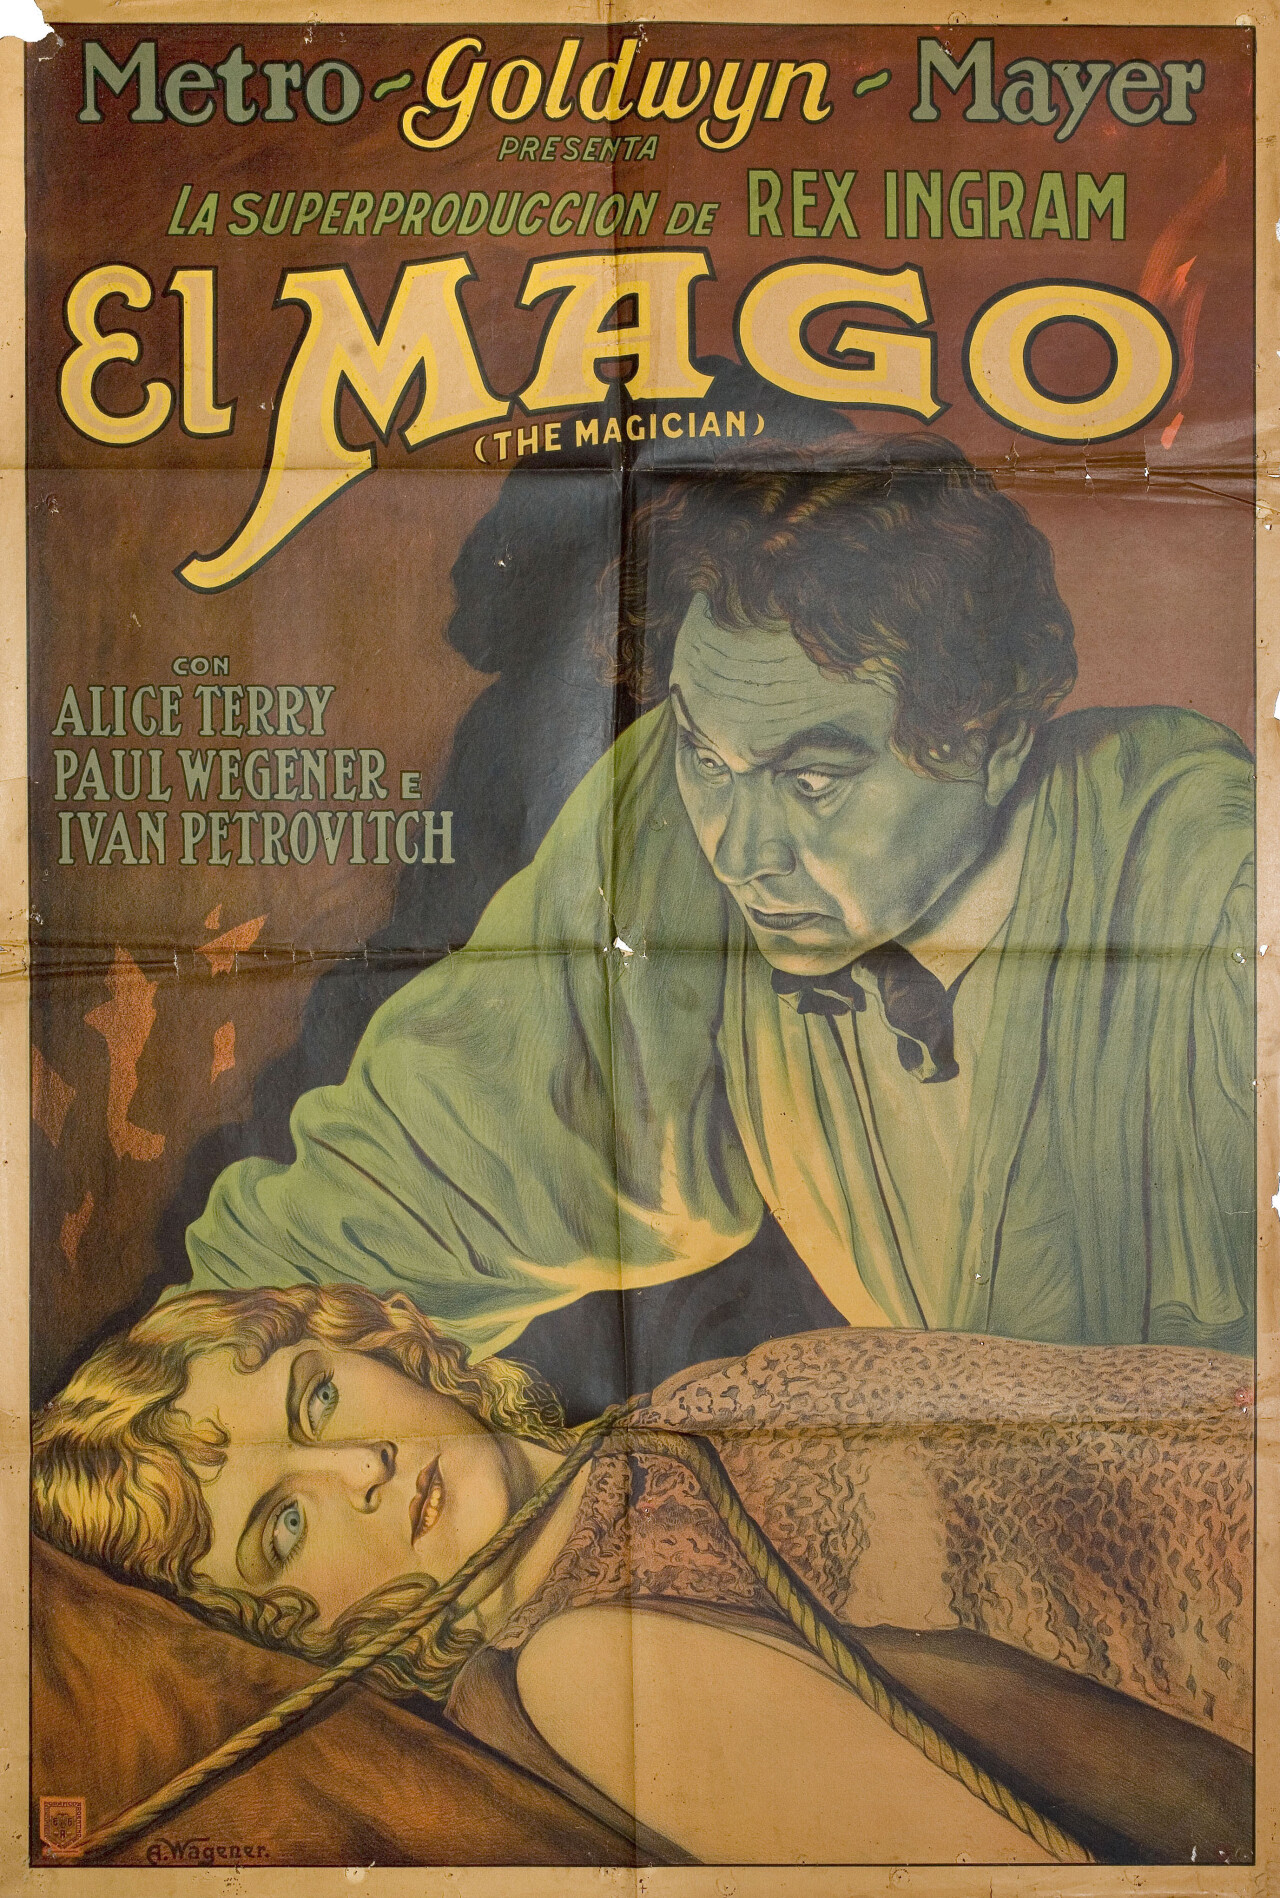 Маг (The Magician, 1926), режиссёр Рекс Ингрэм, аргентинский постер к фильму, автор А. Вагенер (ужасы, 1926 год)